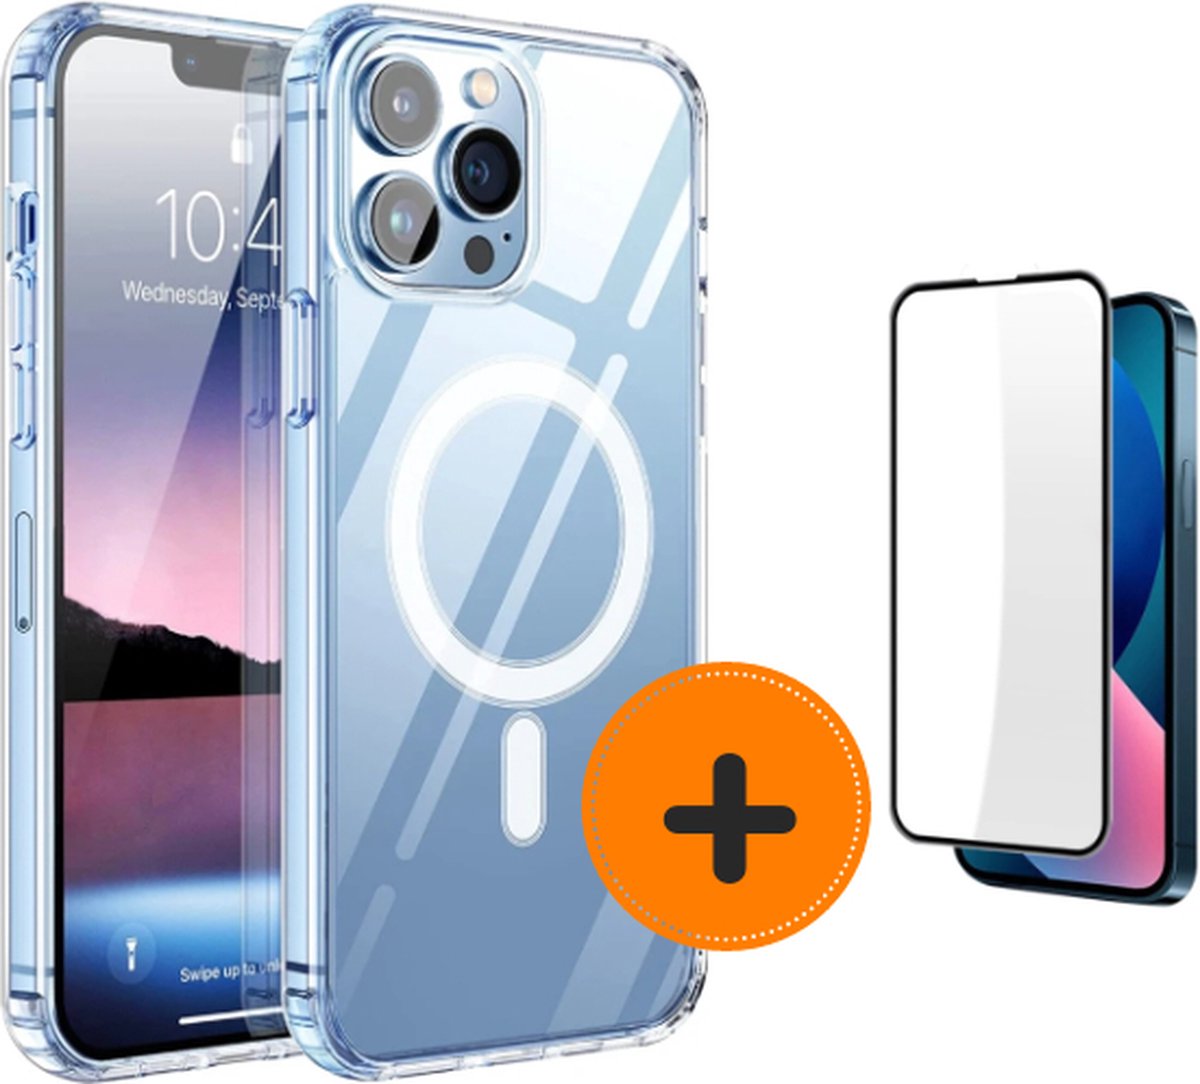 Bundel iPhone 12 Pro Max MagSafe telefoonhoesje inclusief screenprotector - shoptelefoonhoesje - sterke magneet inclusief screenprotector